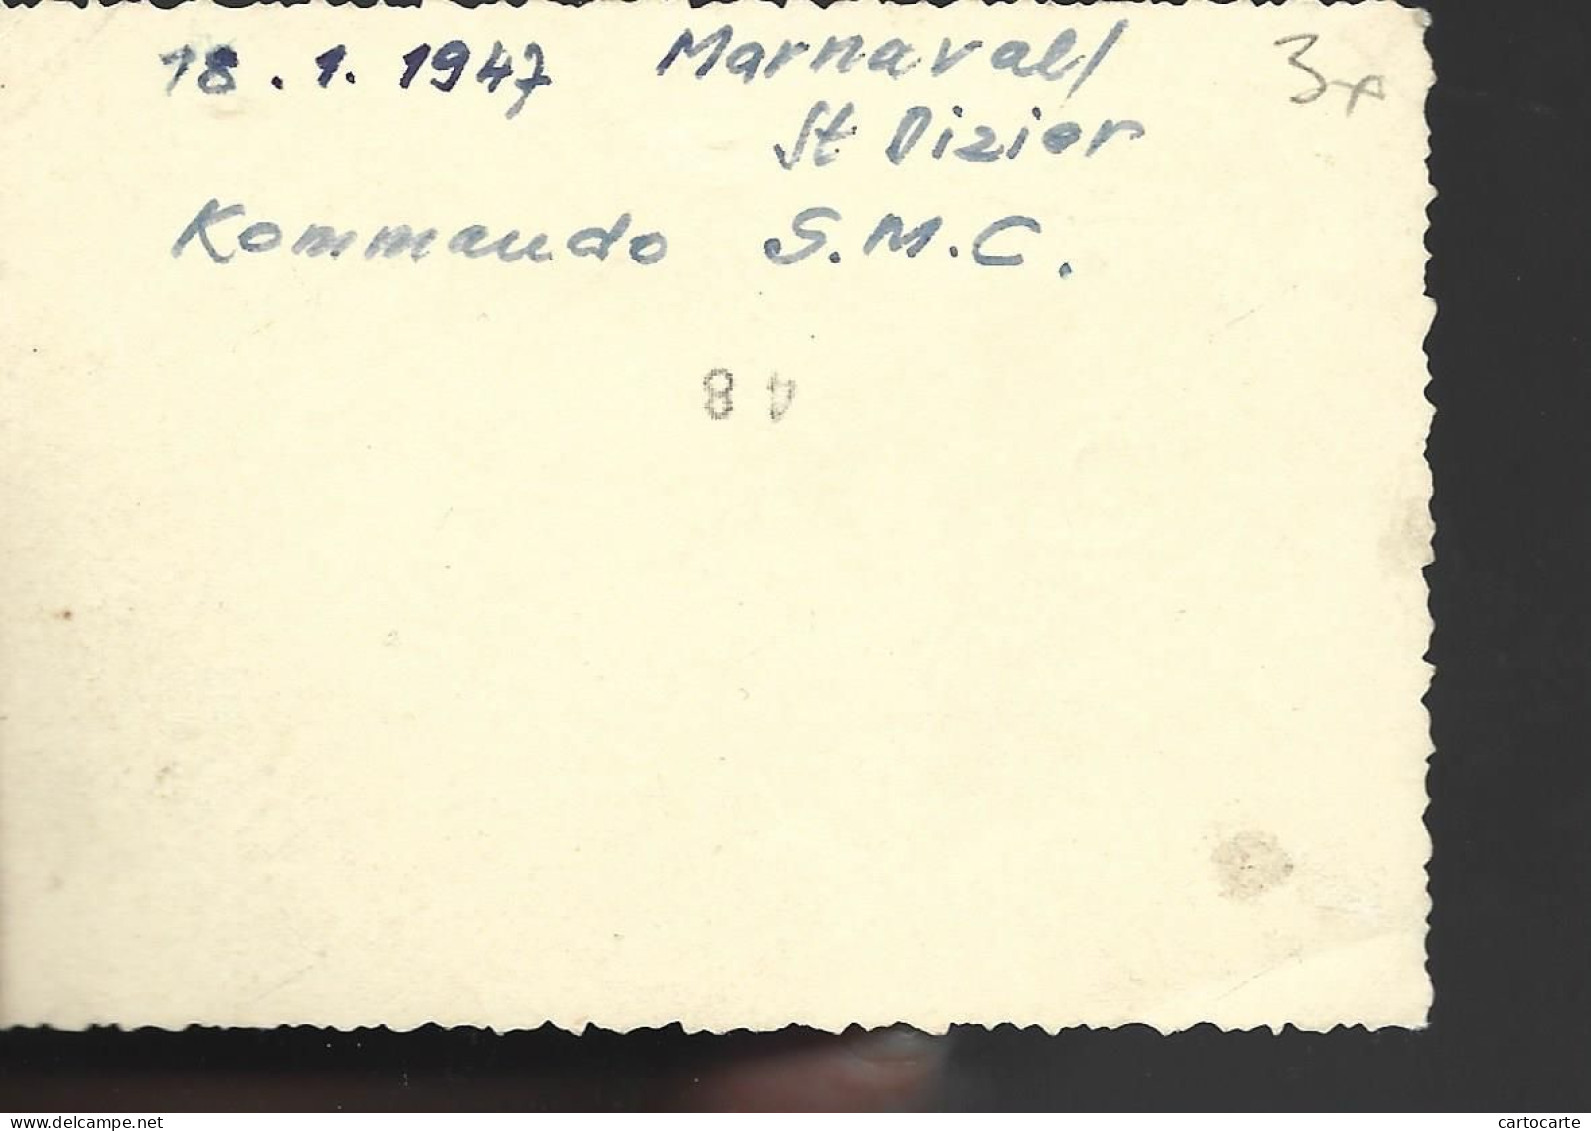 52 126 0524 WW2 WK2 HAUTE MARNE ST DIZIER MARNAVAL CAMP DE SOLDATS ALLEMANDS PRISONNIERS 1947 - Guerre, Militaire